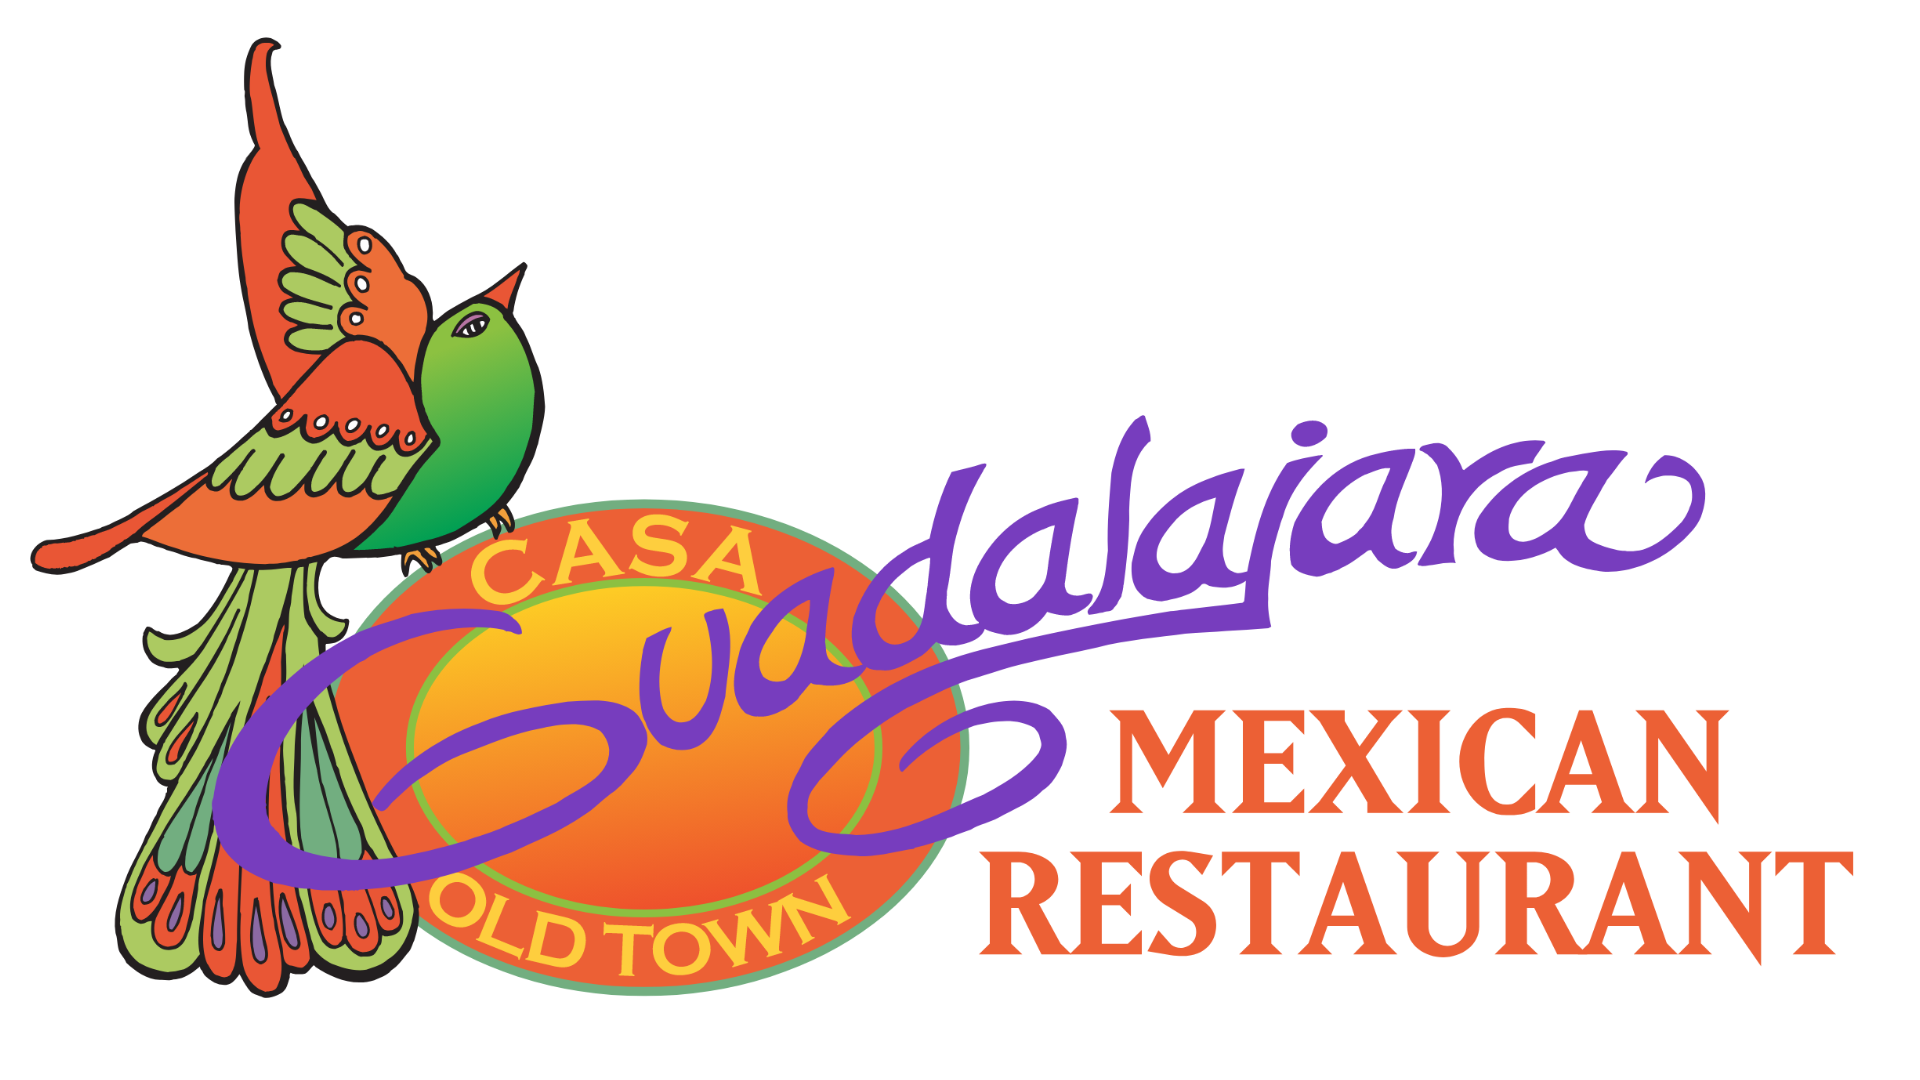 Casa Guadalajara logo